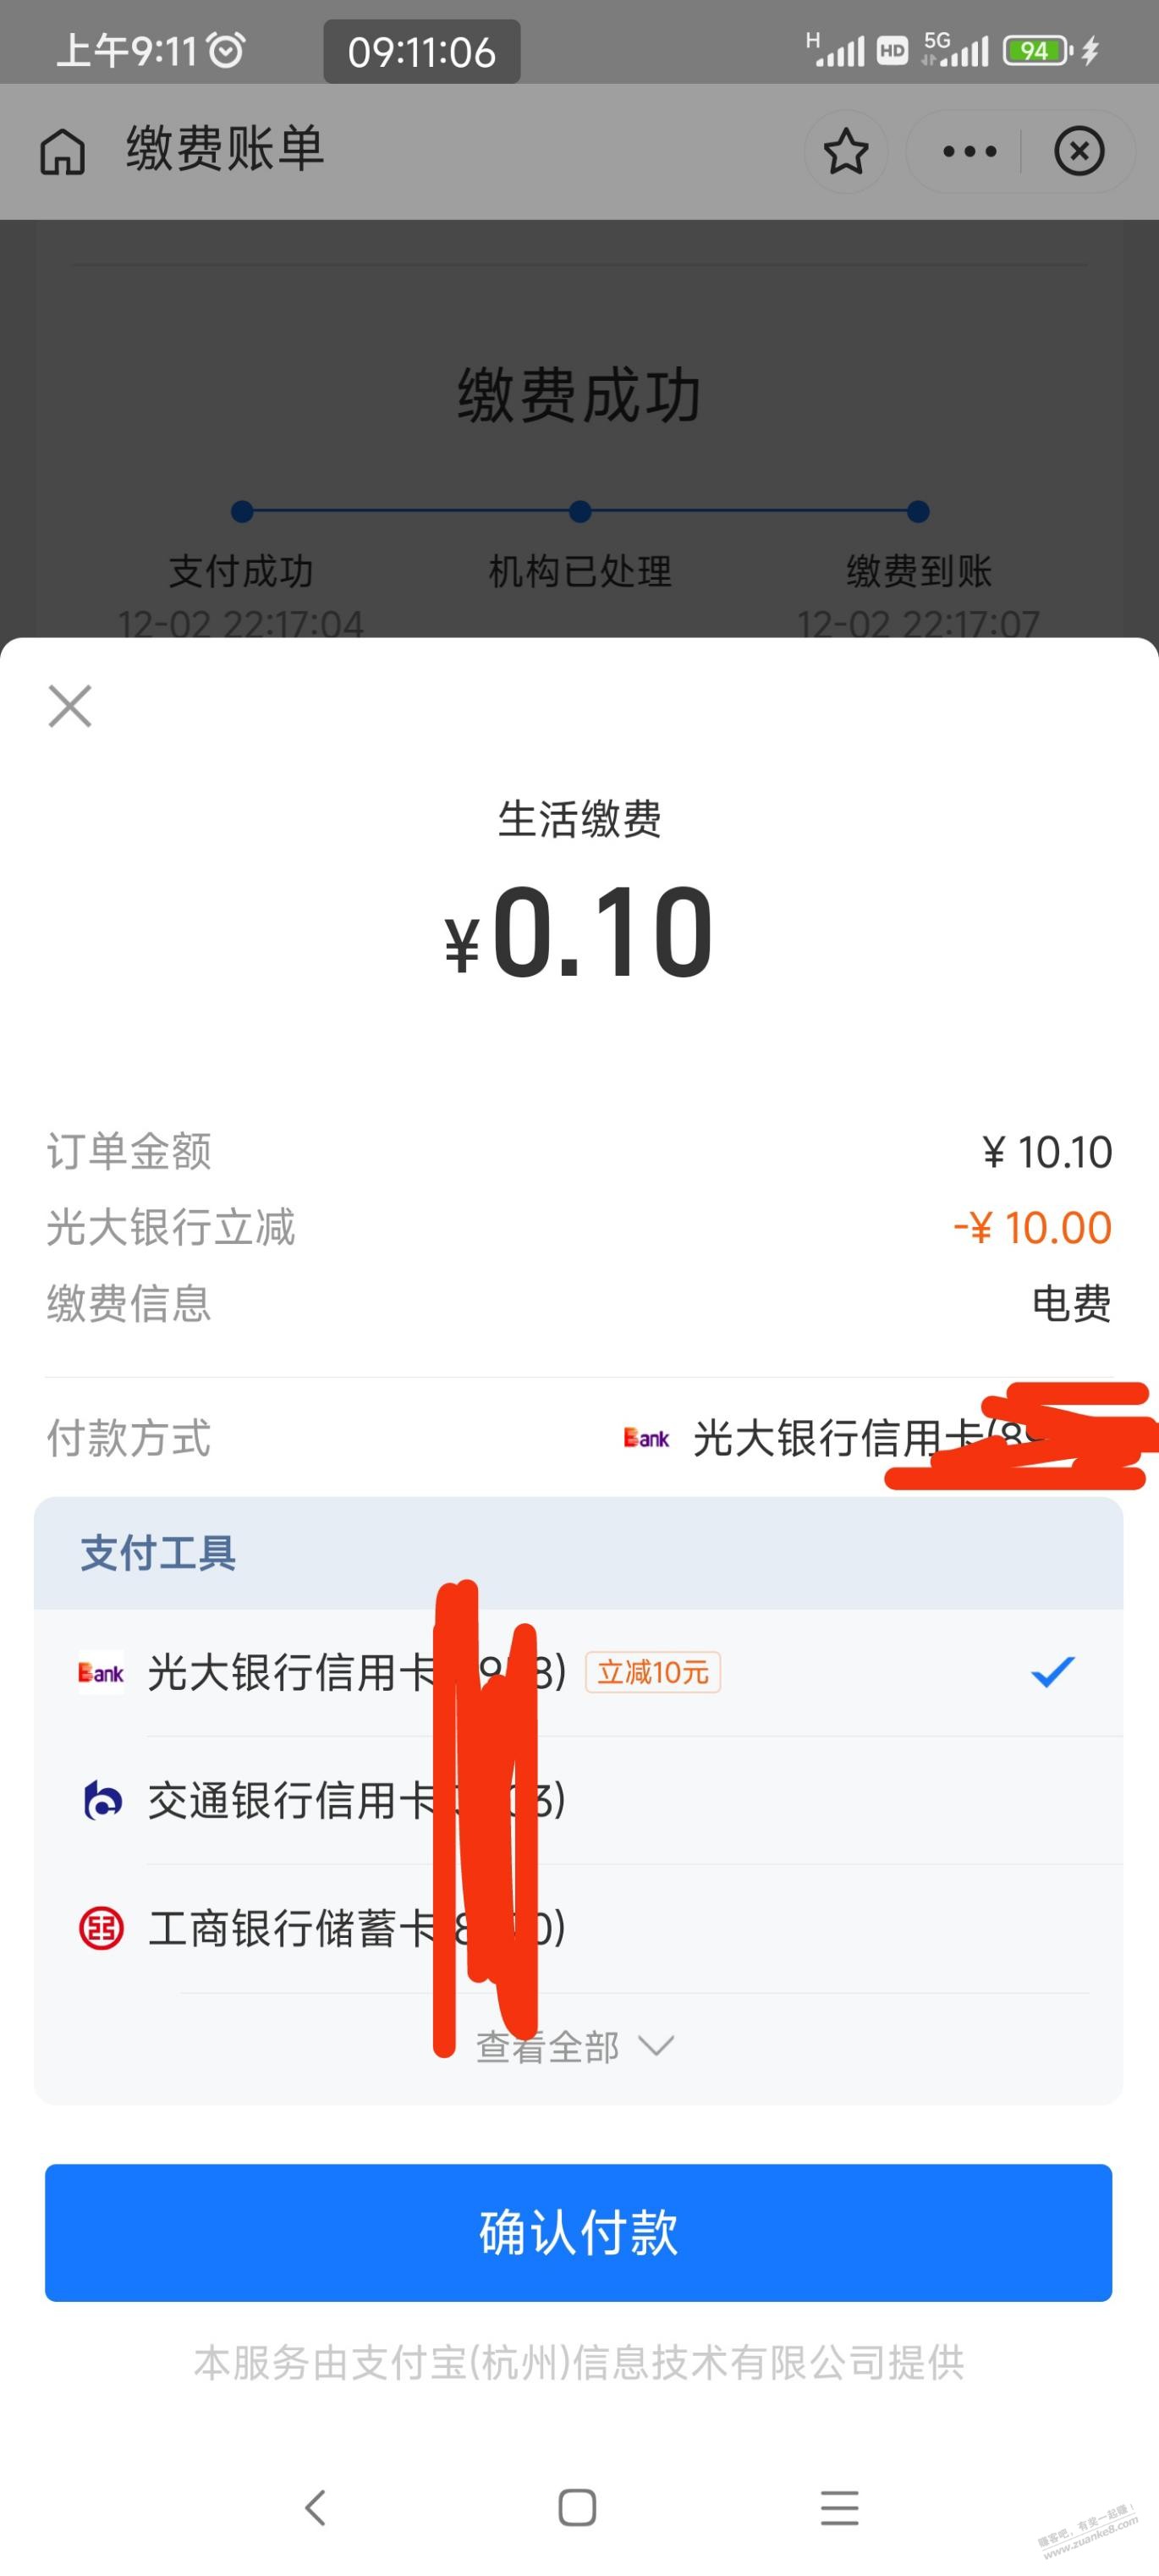 支付宝生活缴费光大xing/用卡10.1-10-惠小助(52huixz.com)